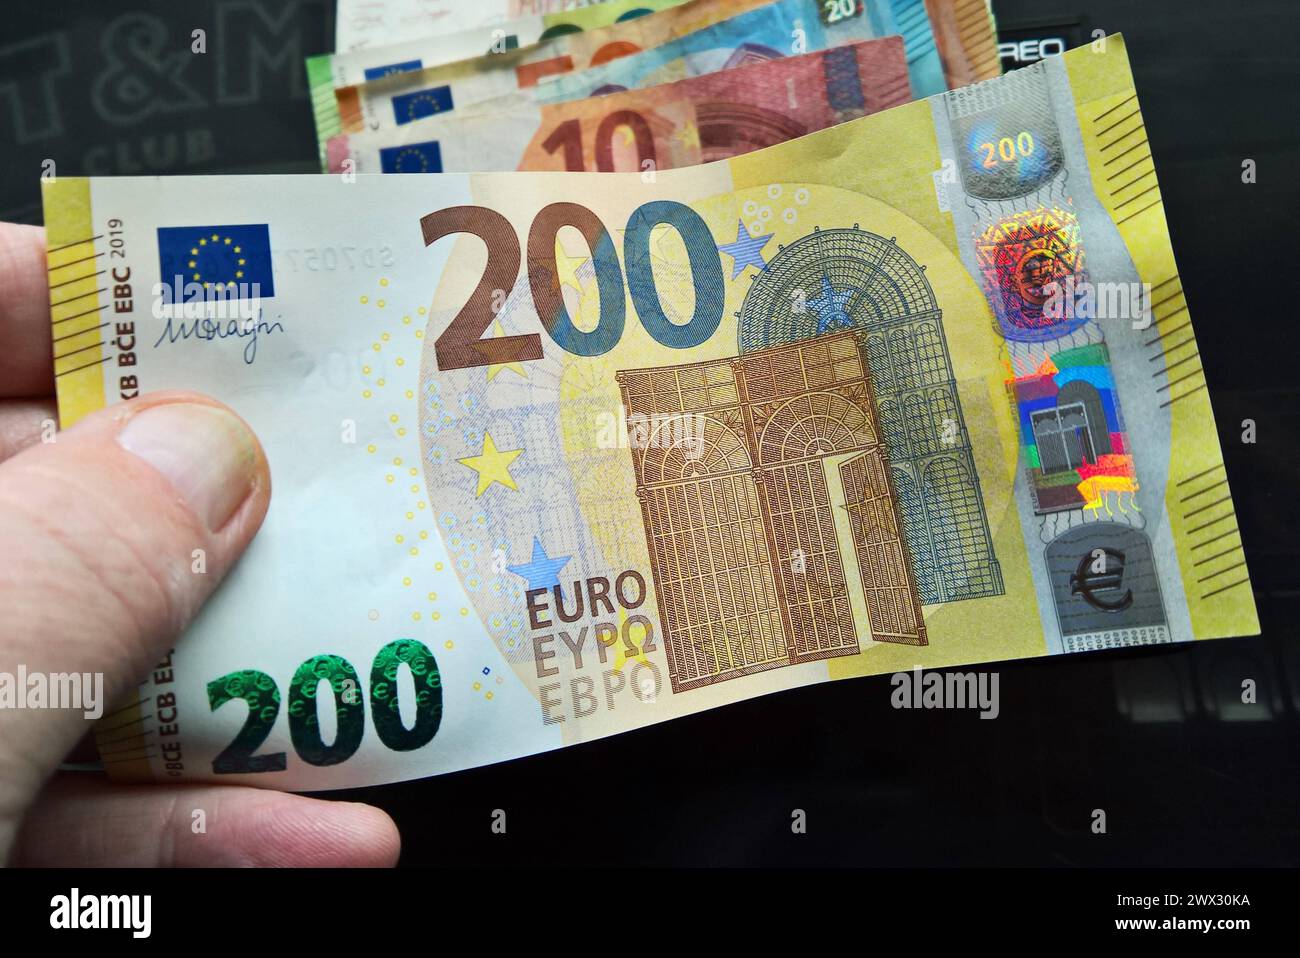 Zahlungsmittel, Geldschein, Bargeld, 200 Euro Schein *** mezzi di pagamento, banconota, contante, banconota da 200 euro Foto Stock